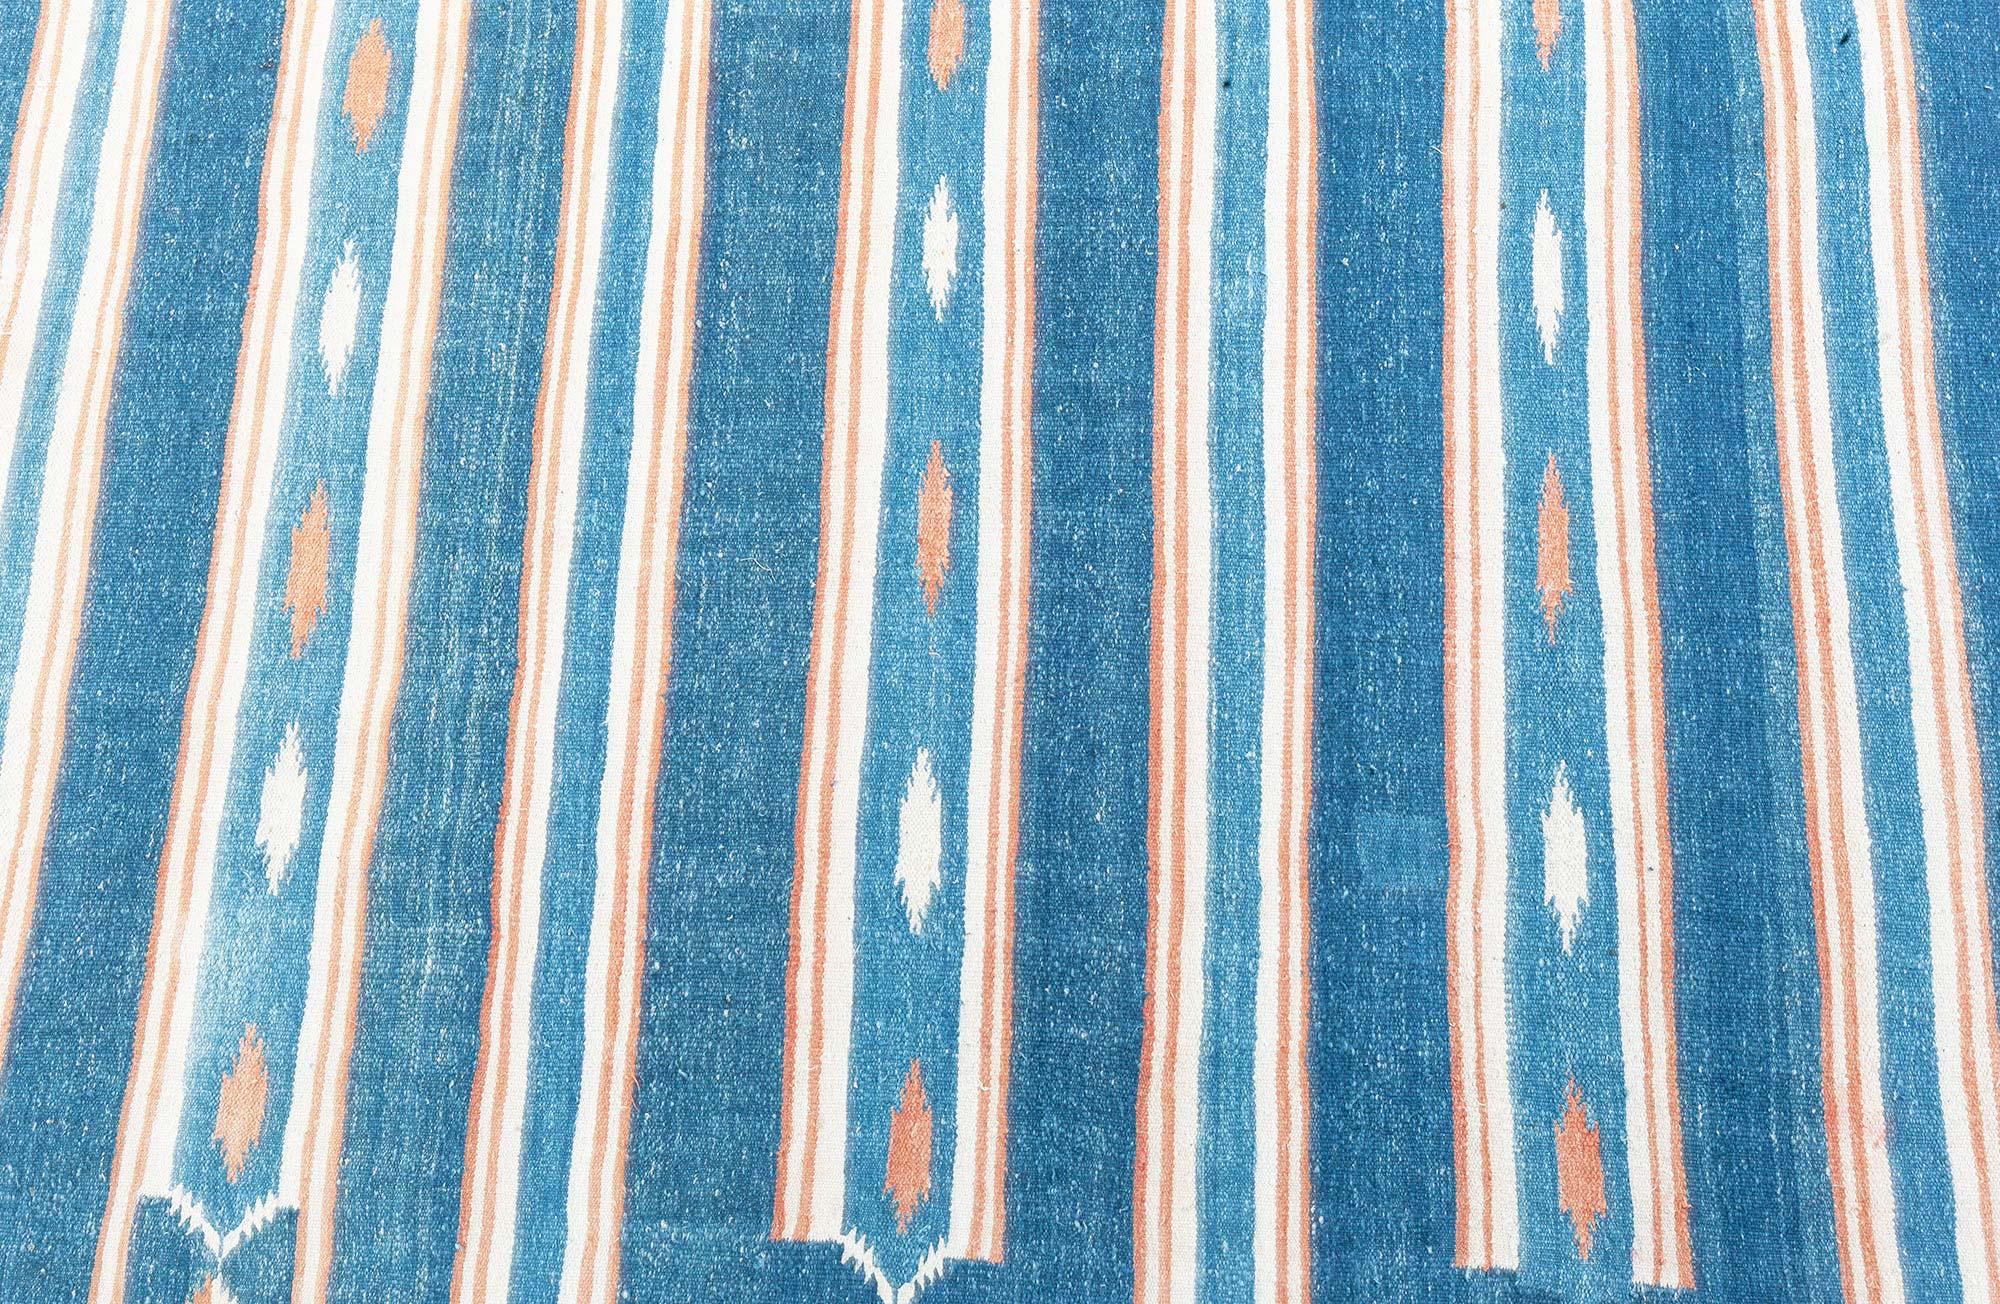 Vintage Indian Dhurrie striped blue Beige rug
Size: 13'9